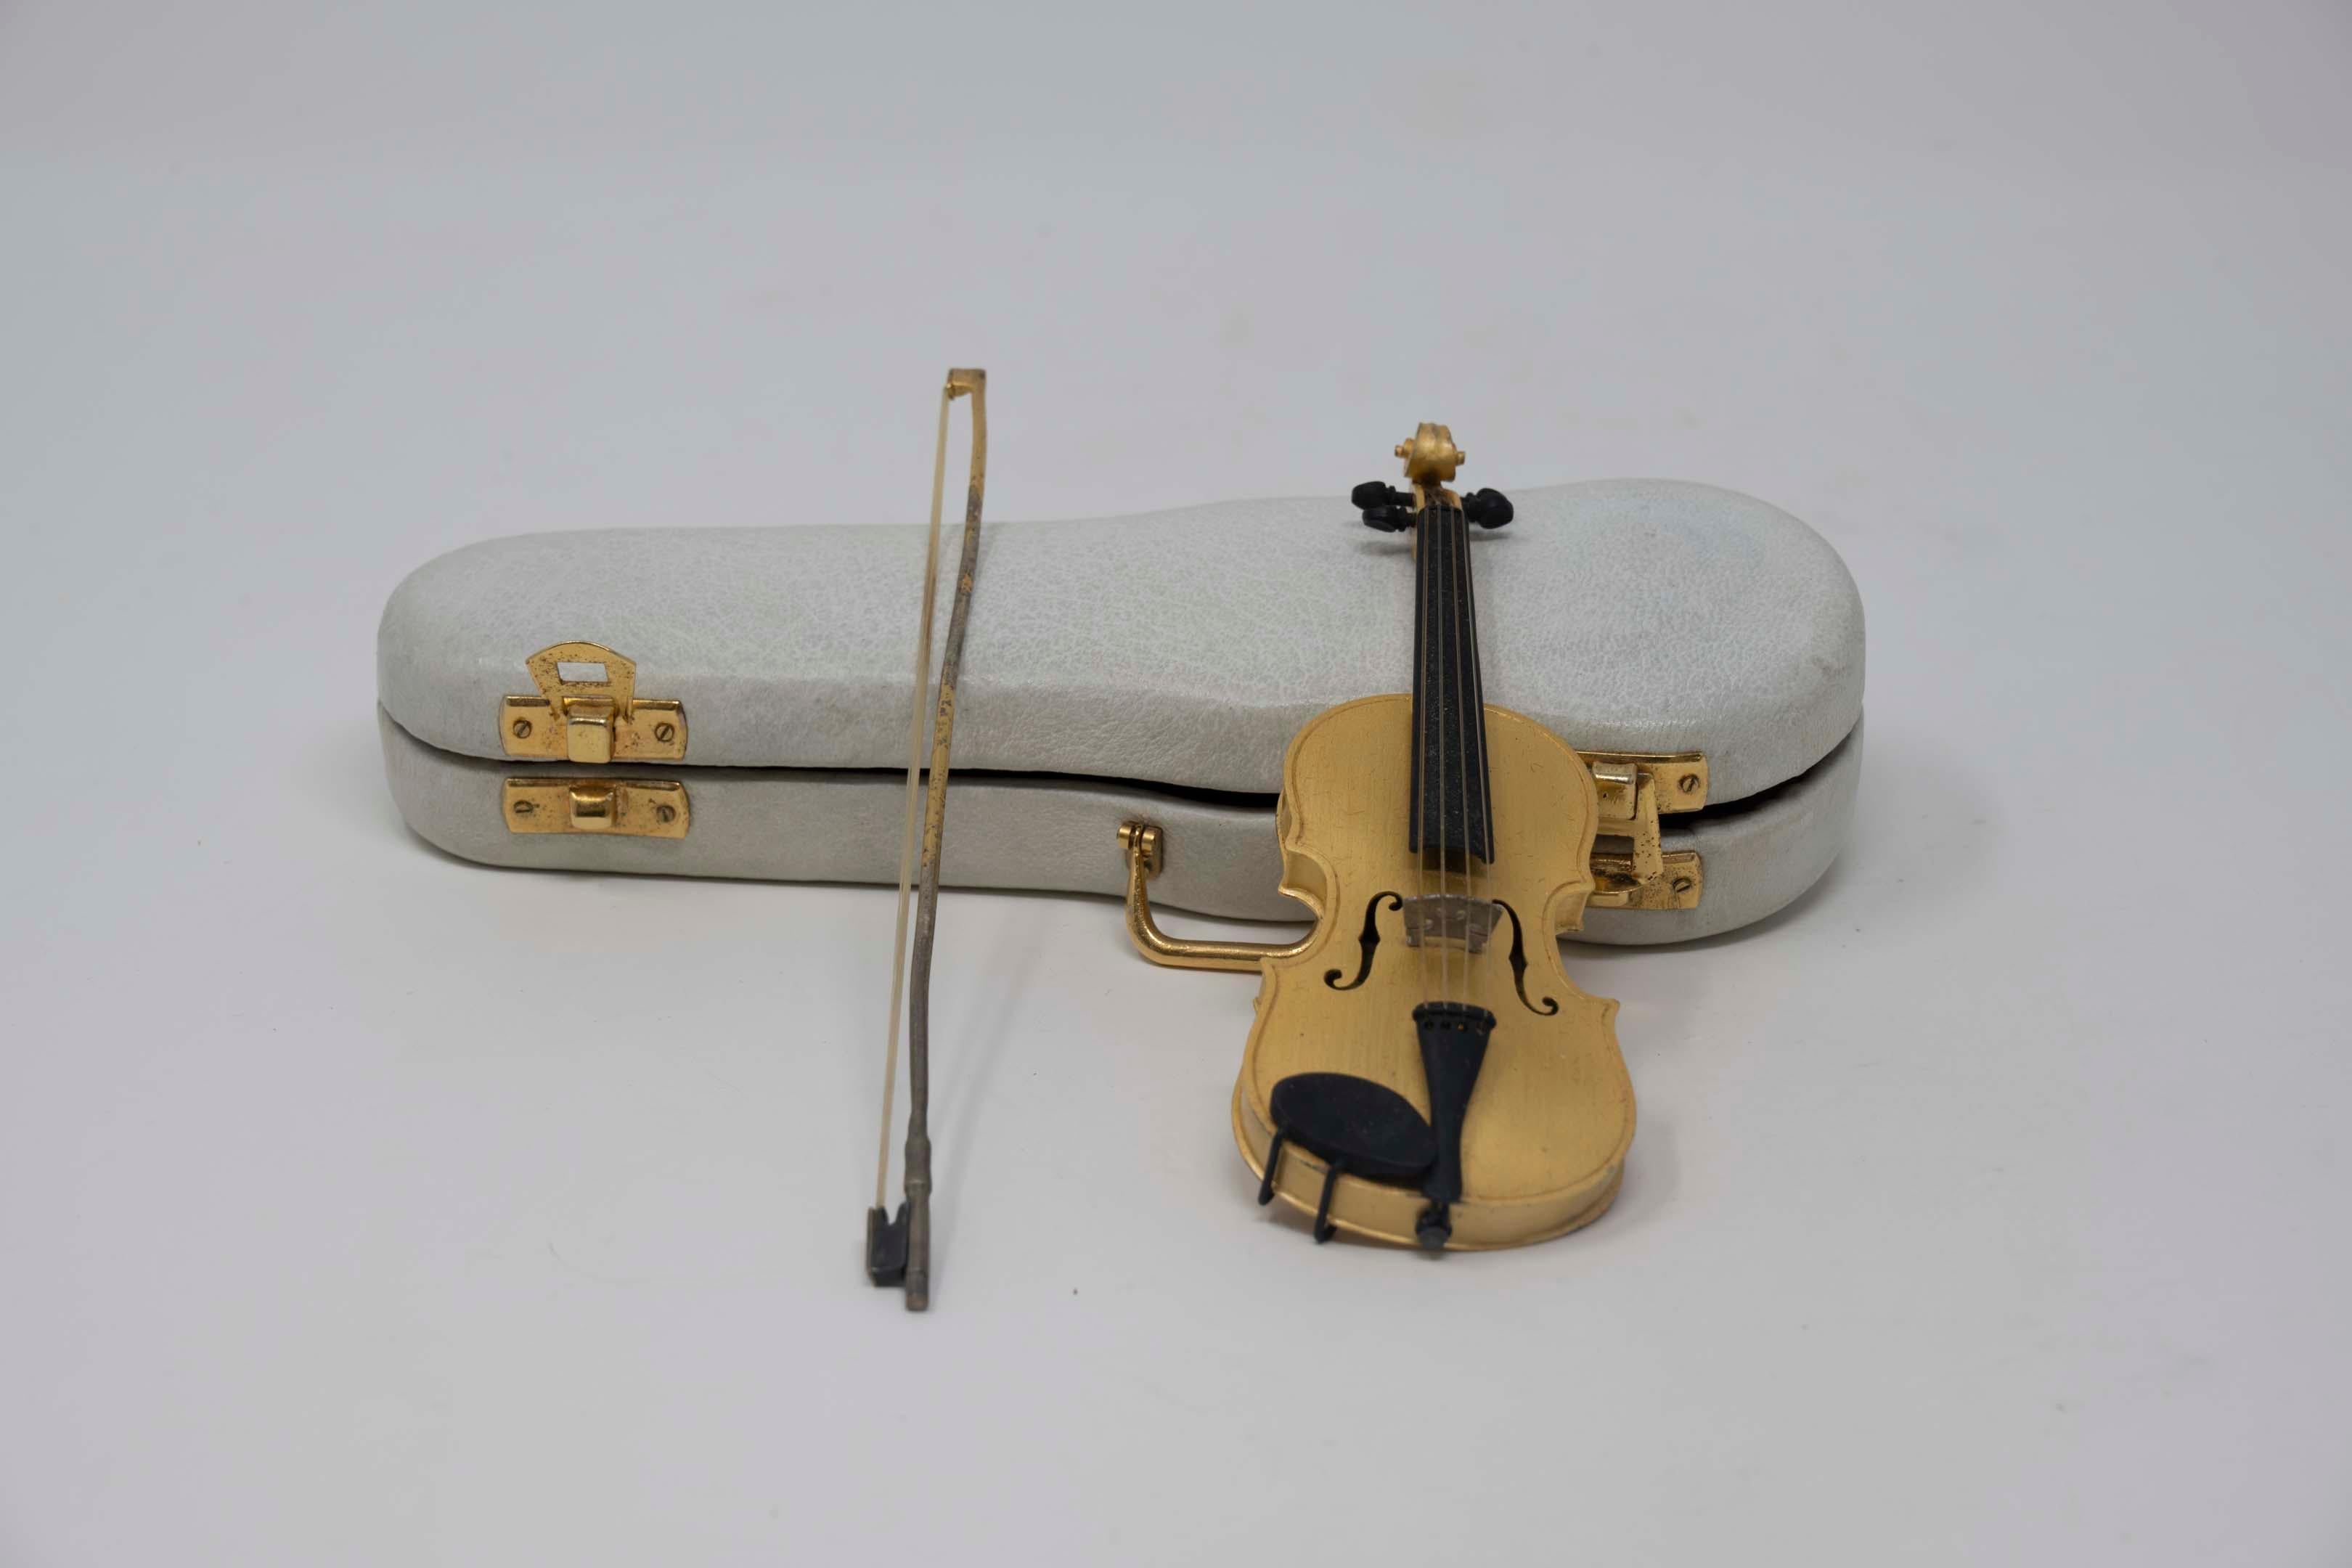 Vintage Sterling Silber Gold vergoldet Miniatur-Geige mit Original-Etui und Bogen von Cira gemacht. Maße: 12 cm lang, Gehäuse 17 cm lang. Gestempelt Cira 925, guter Zustand.
